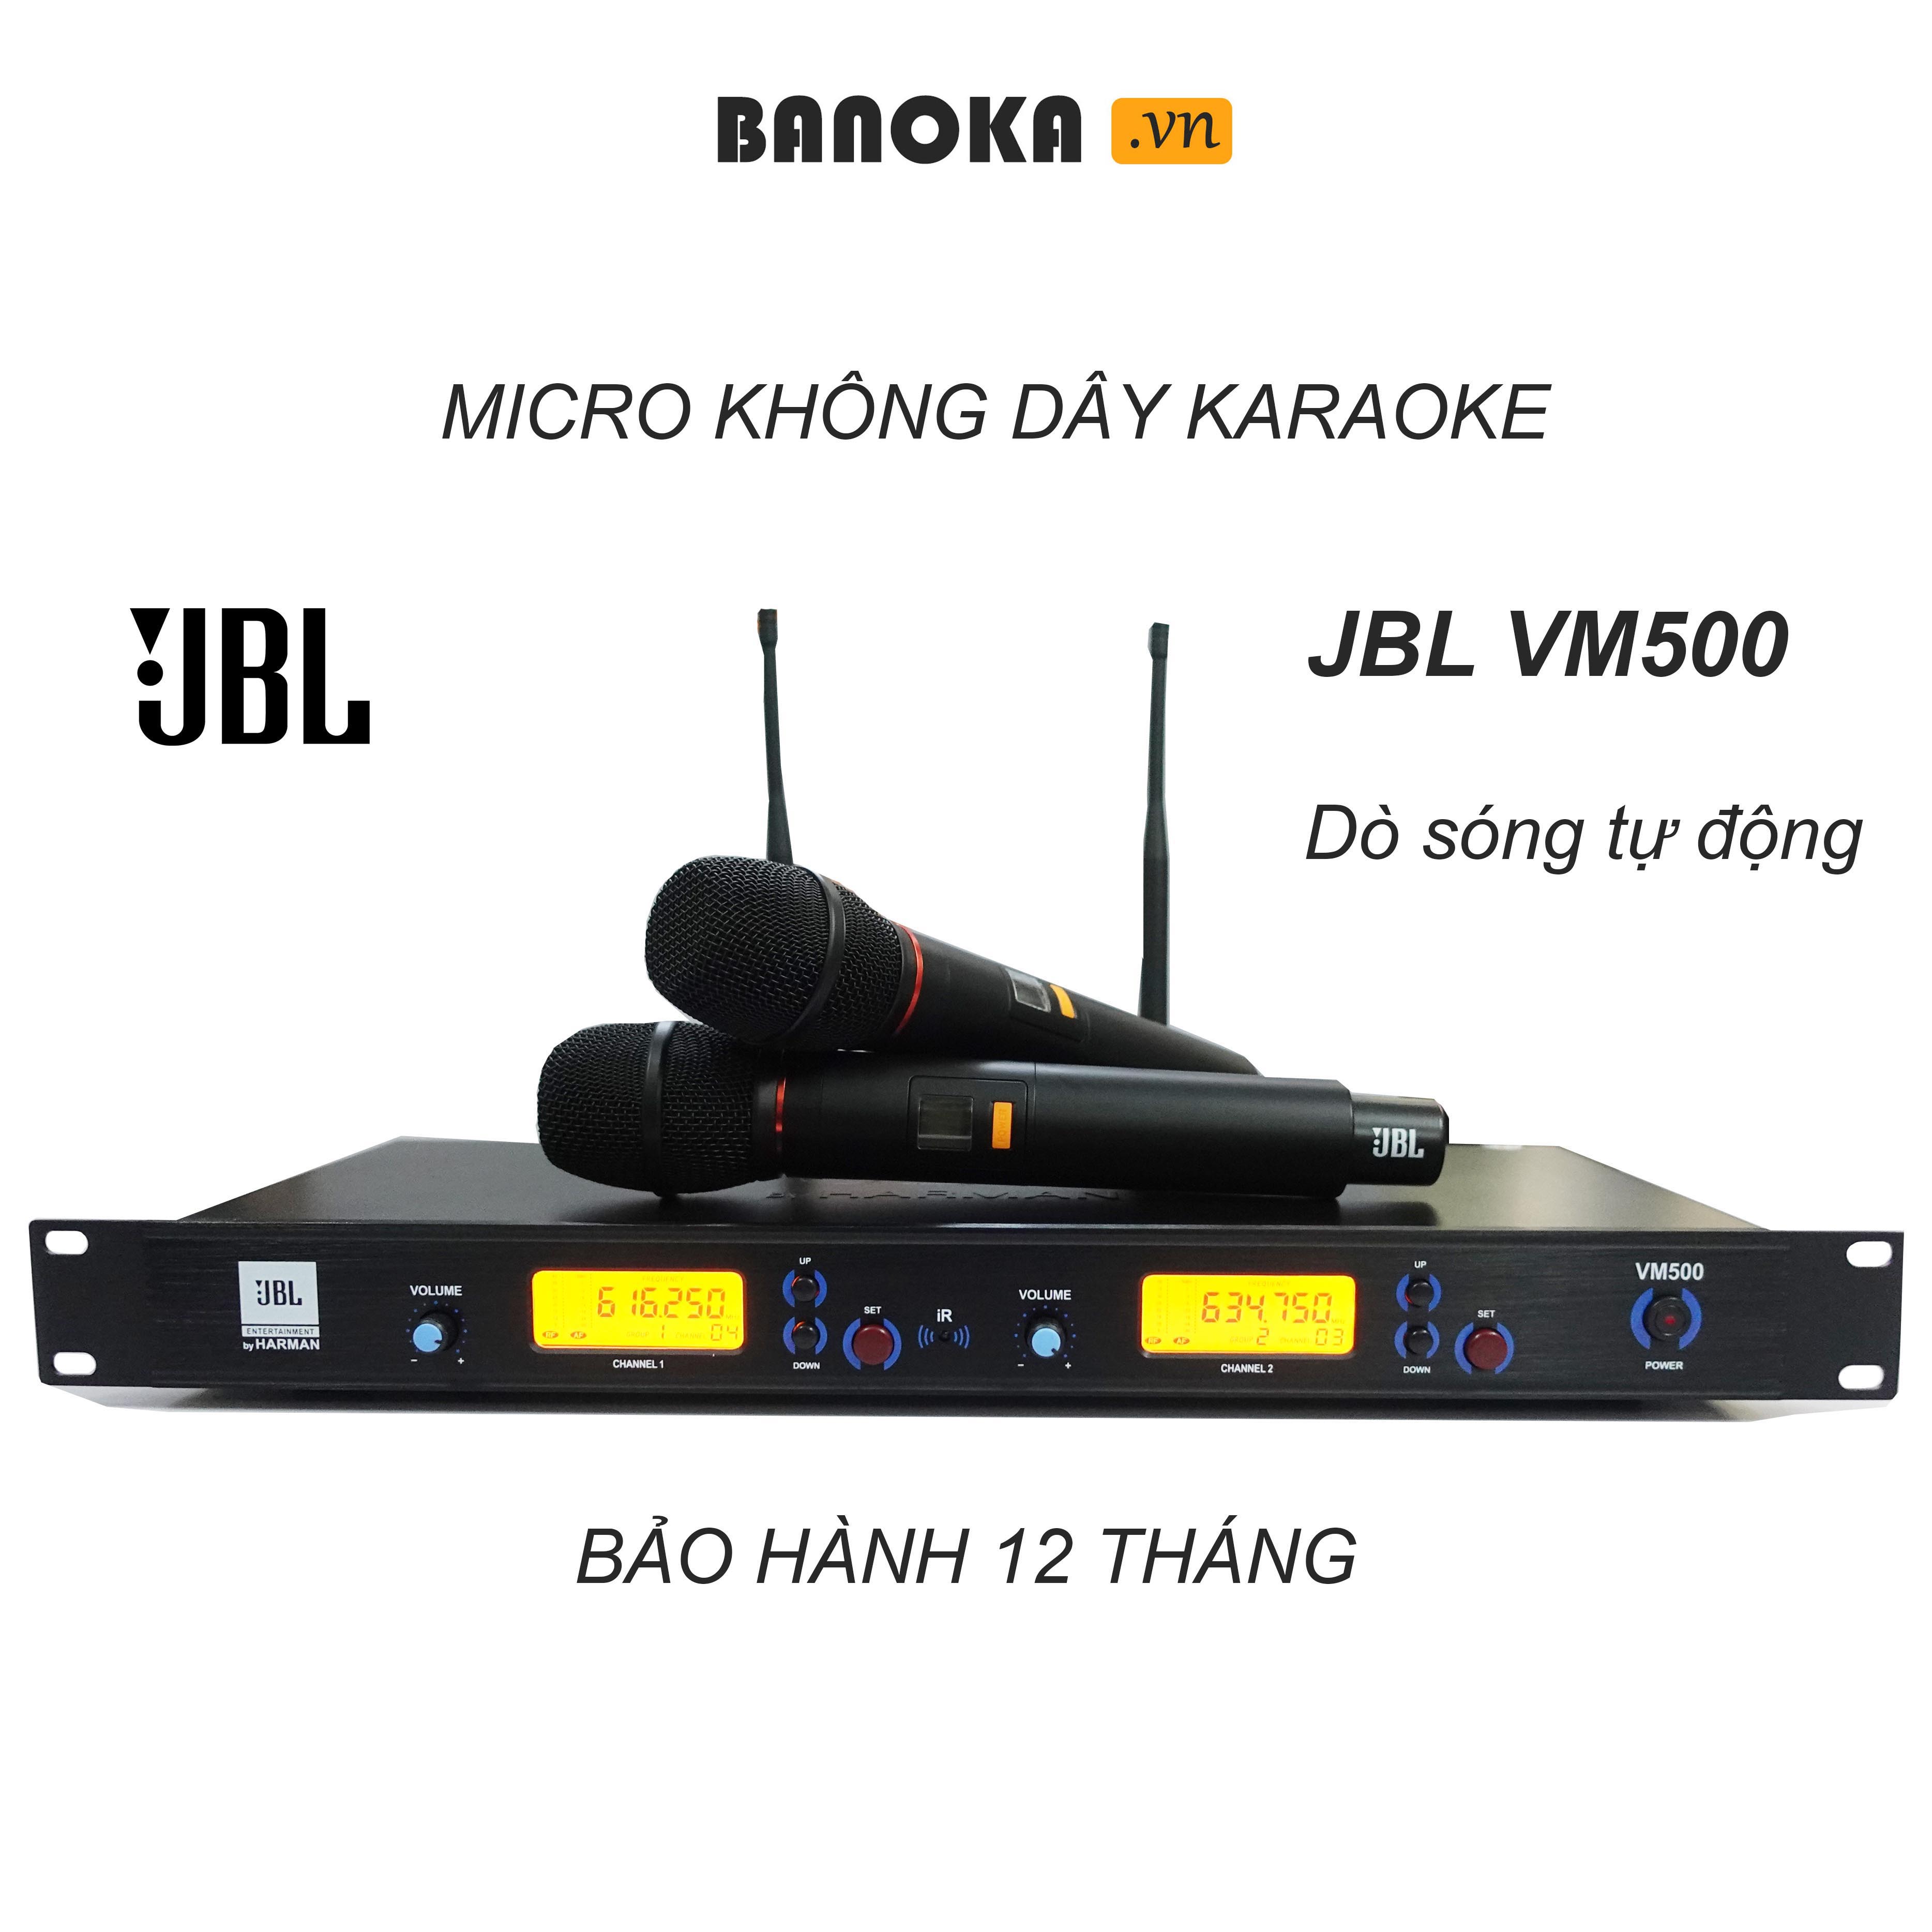 Micro không dây karaoke JBL VM500, chống rú tốt, âm thanh sạch sẽ